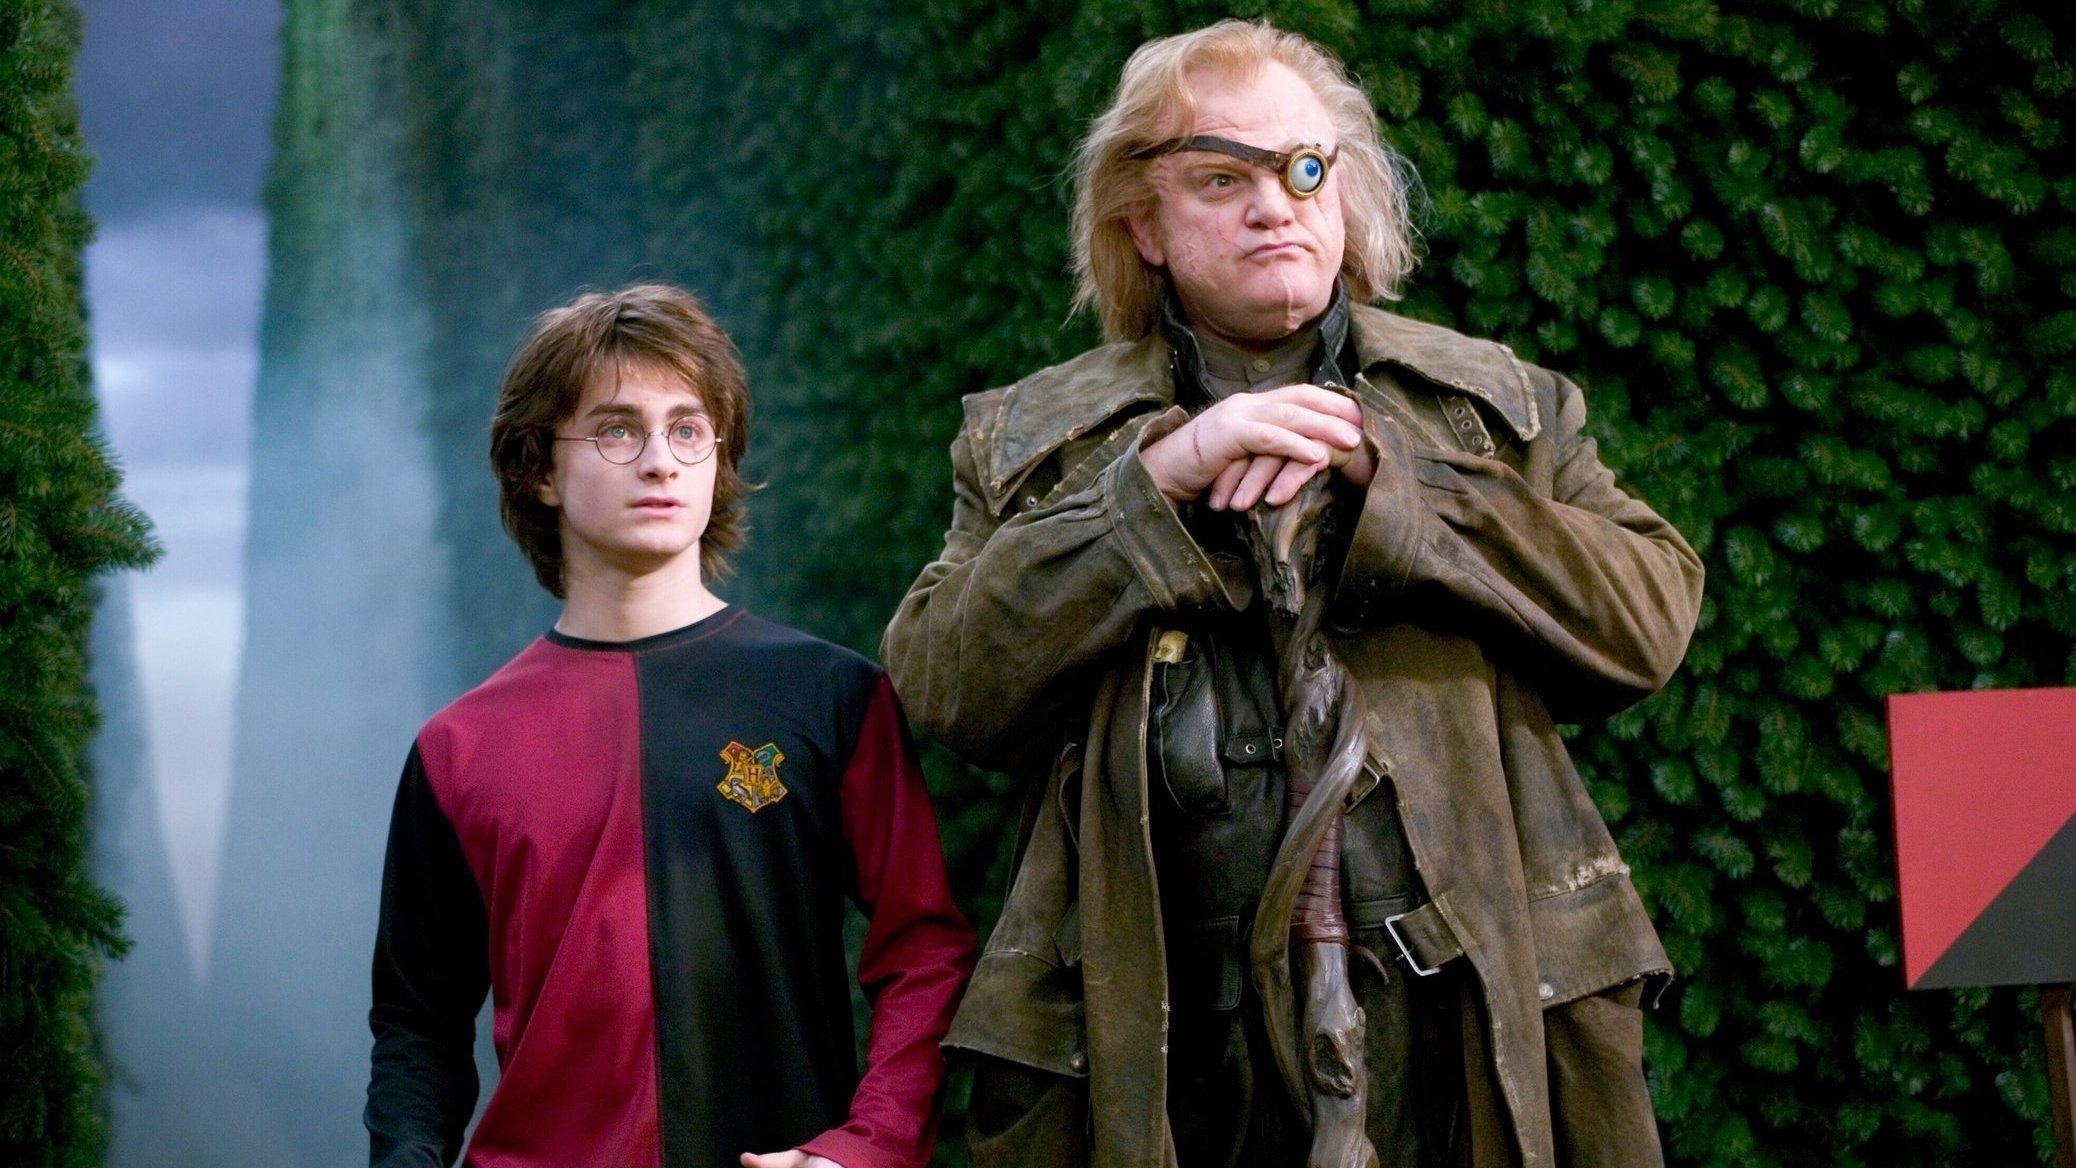 Harry Potter et la coupe de feu, version illustrée. J.K.Rowling